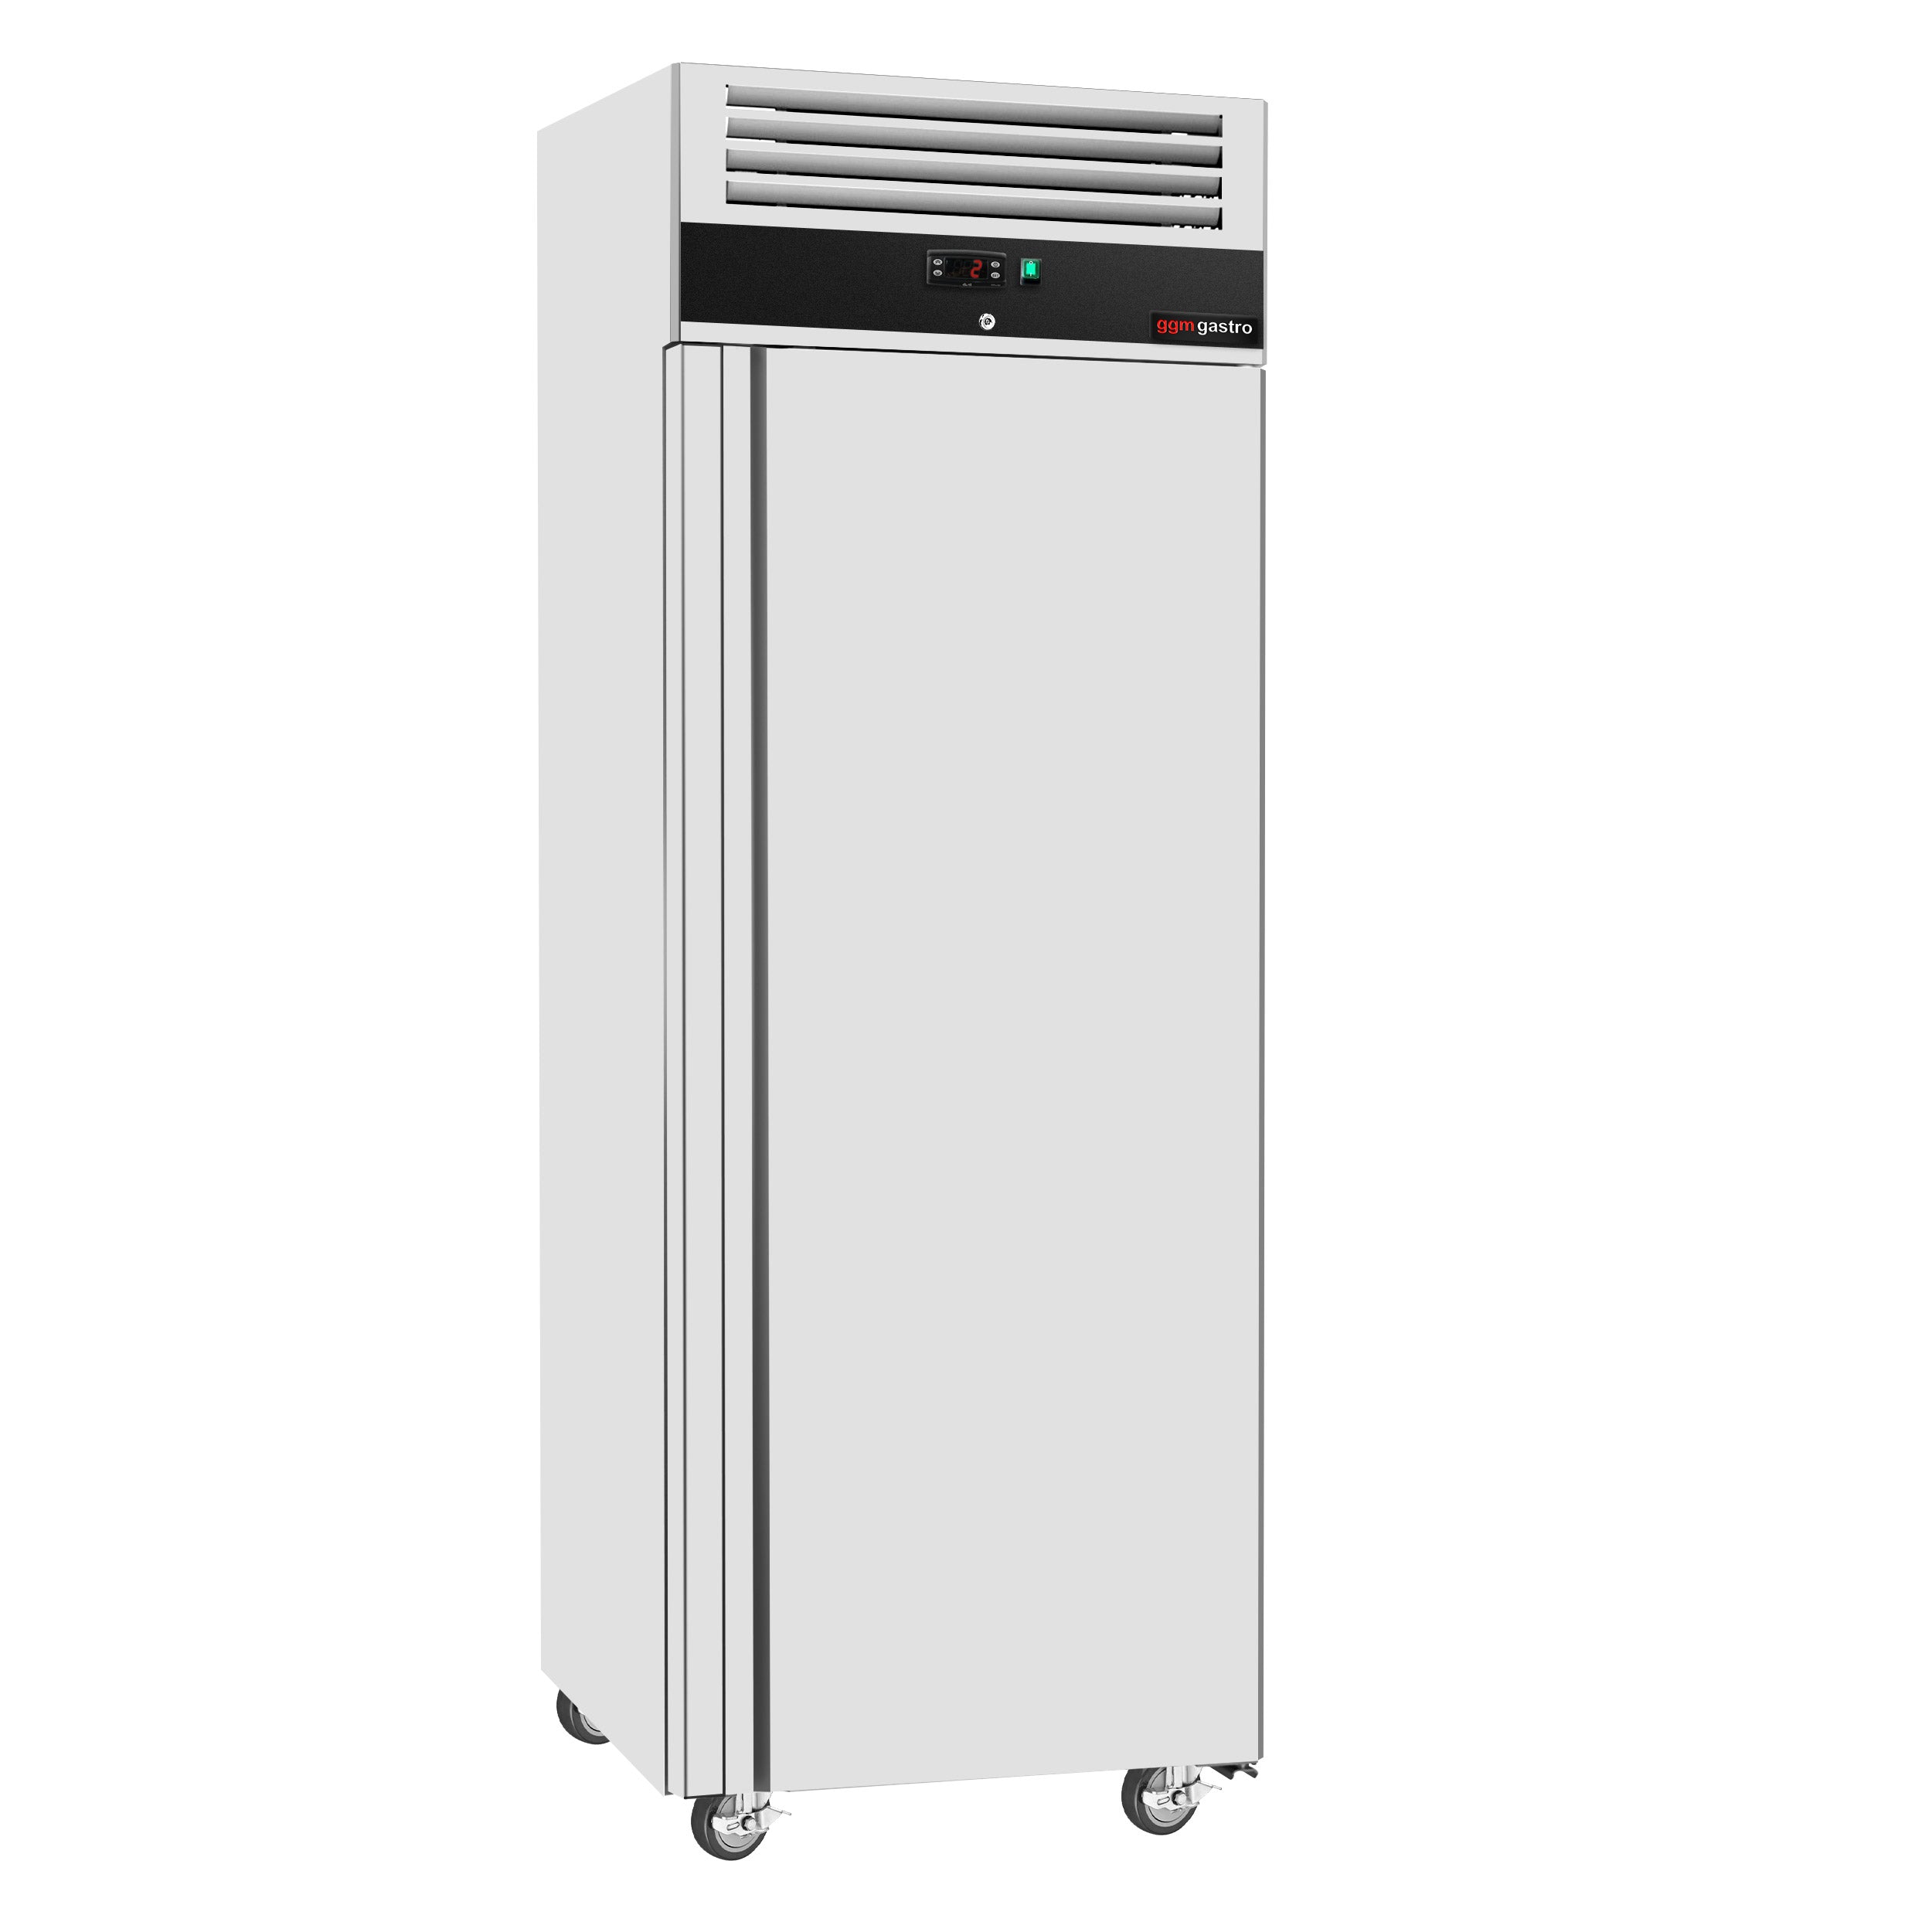 ECO хладилник - 0,68 x 0,71 м - 429 литра - с 1 врата